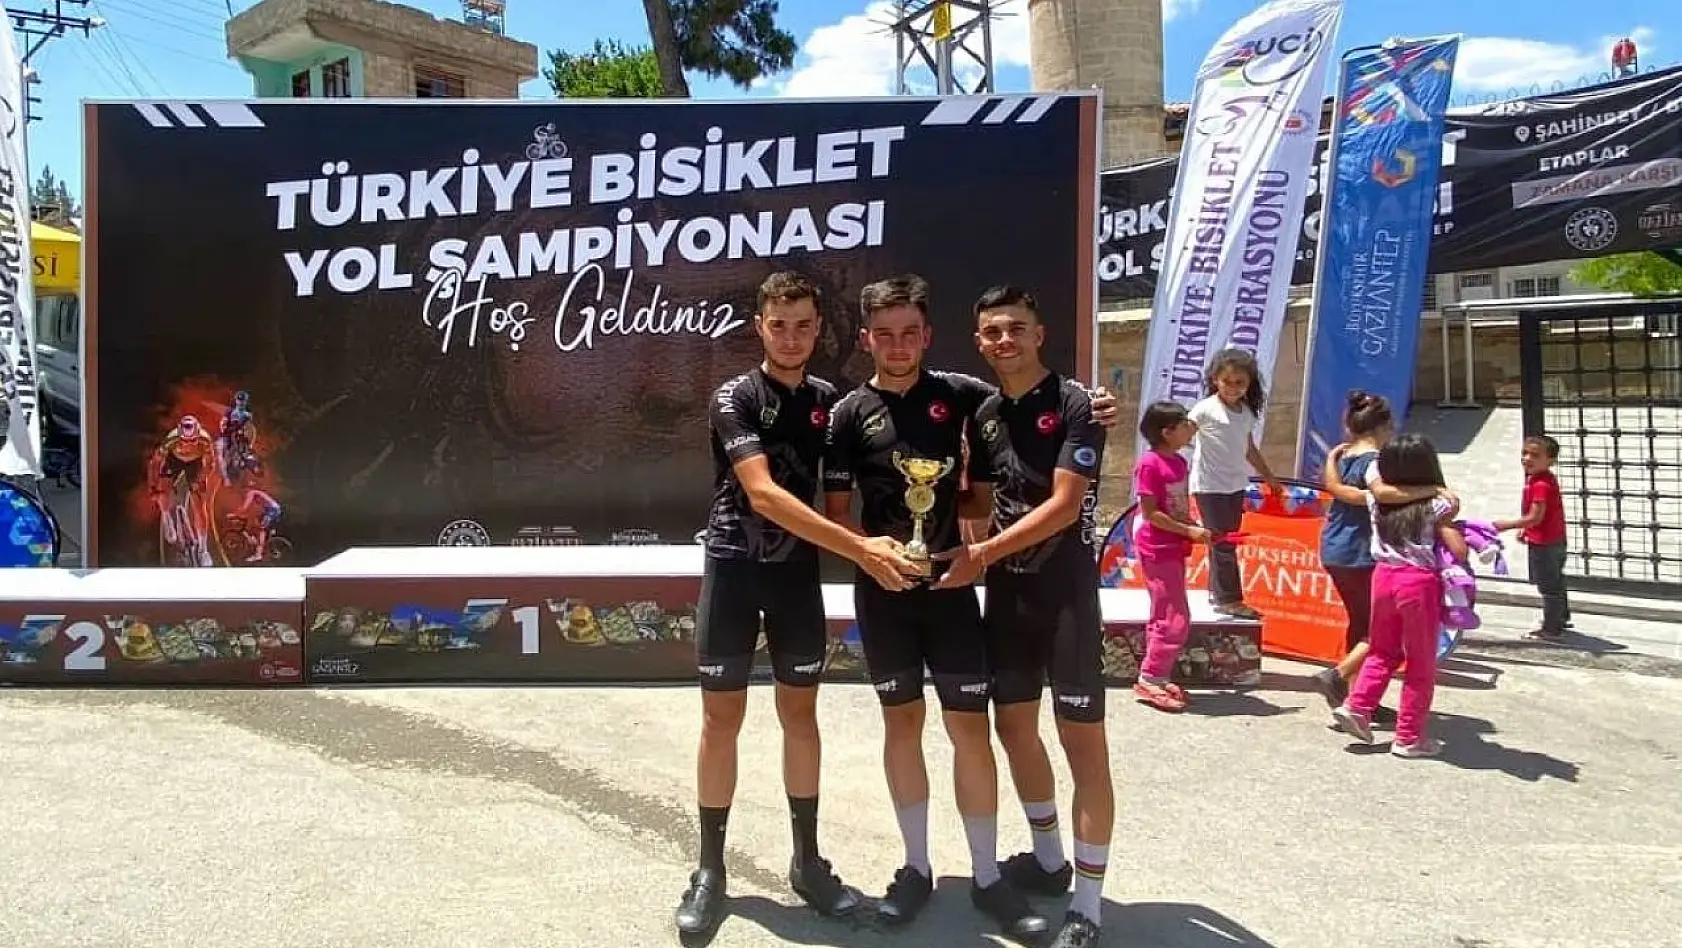 Muğla Bisiklet Takımı Türkiye Şampiyonası'ndan madalya ile döndü